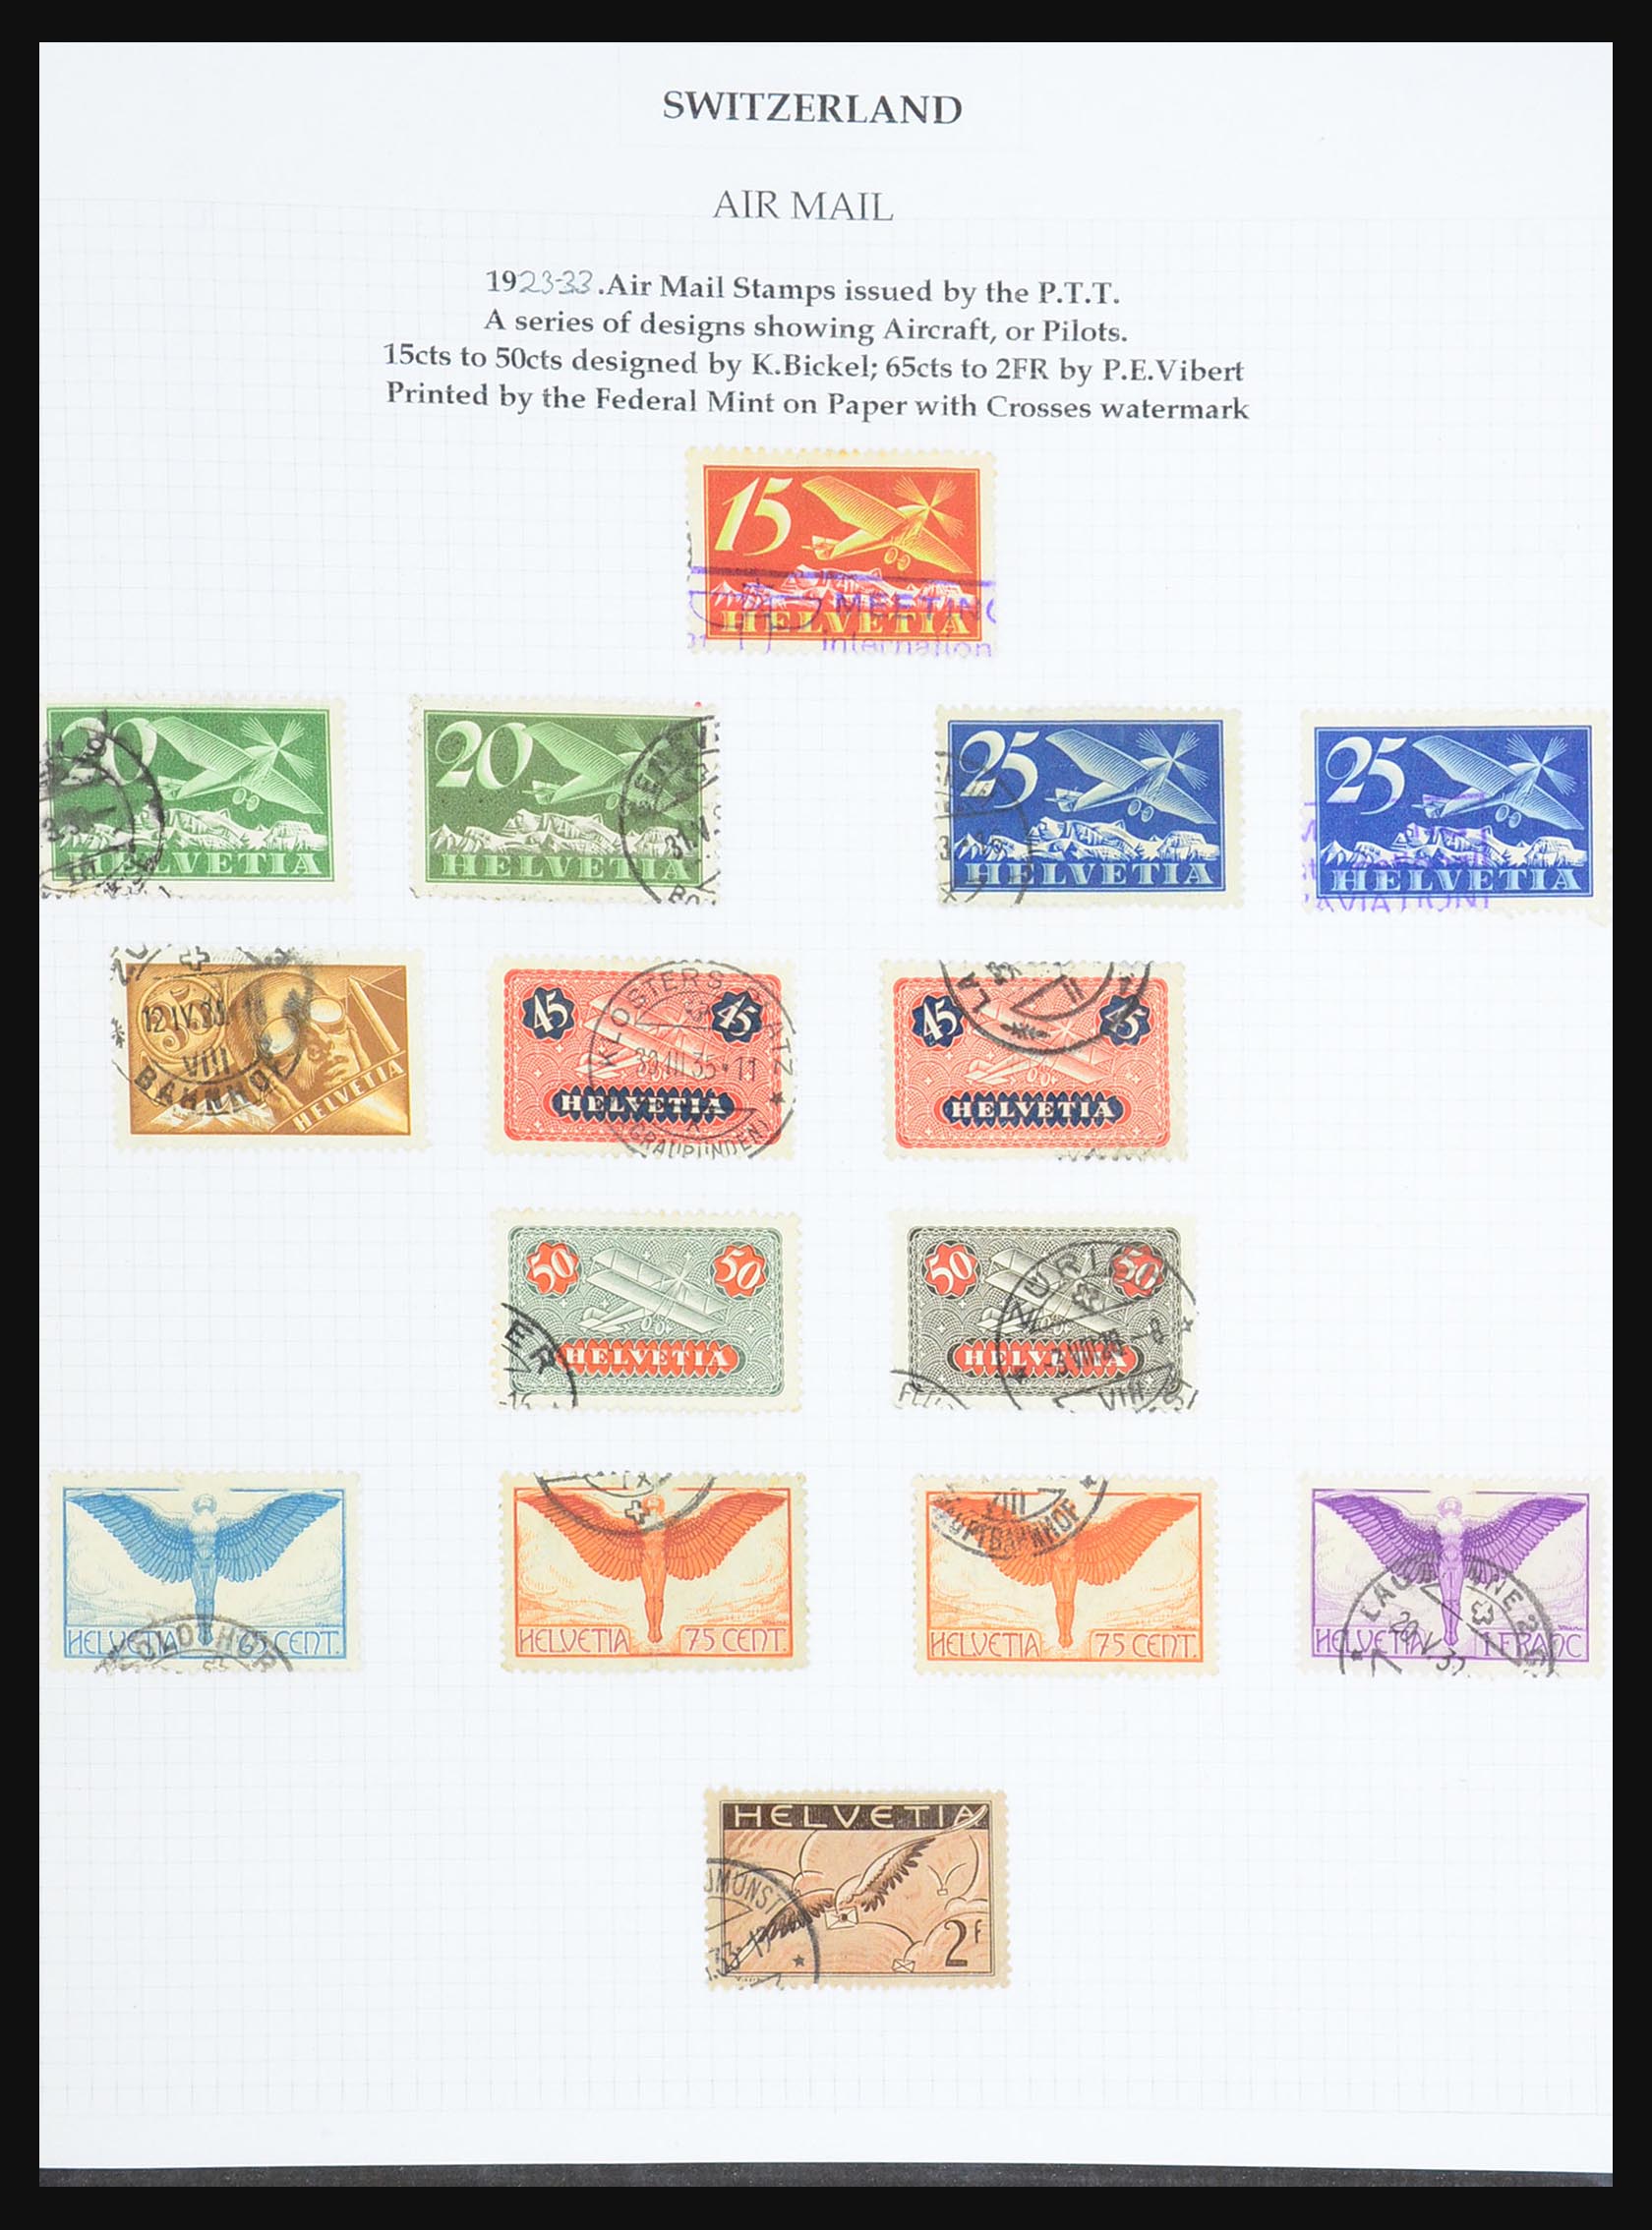 31444 005 - 31444 Switzerland airmail covers 1922-1946.